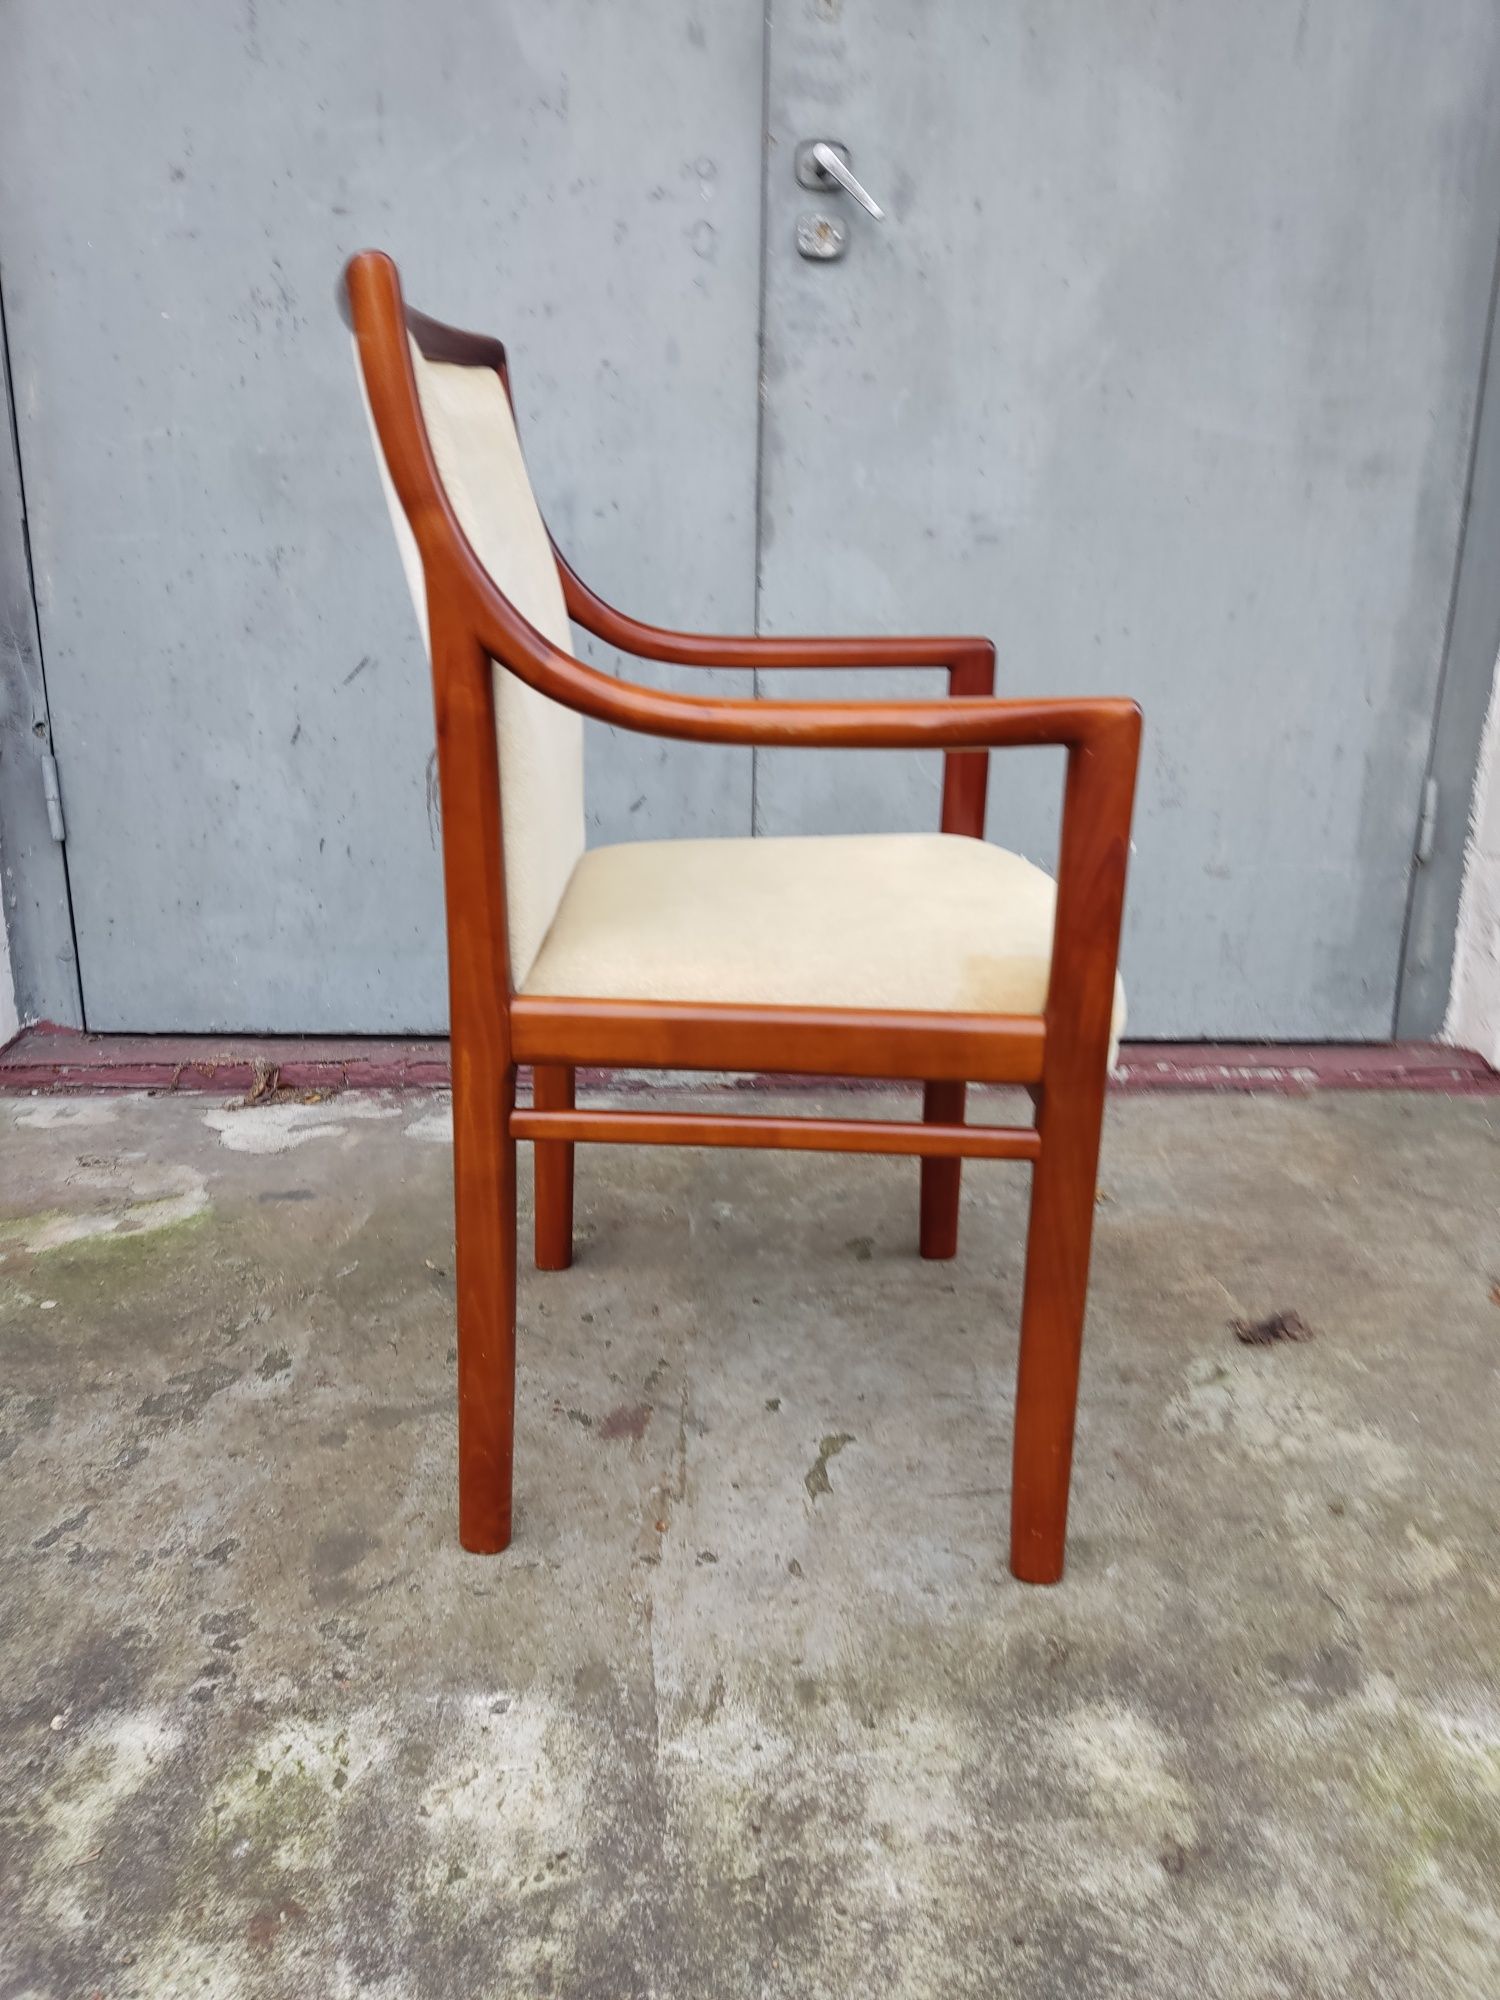 Krzesło z podłokietnikami Lübke lata 70 te Niemcy vintage design